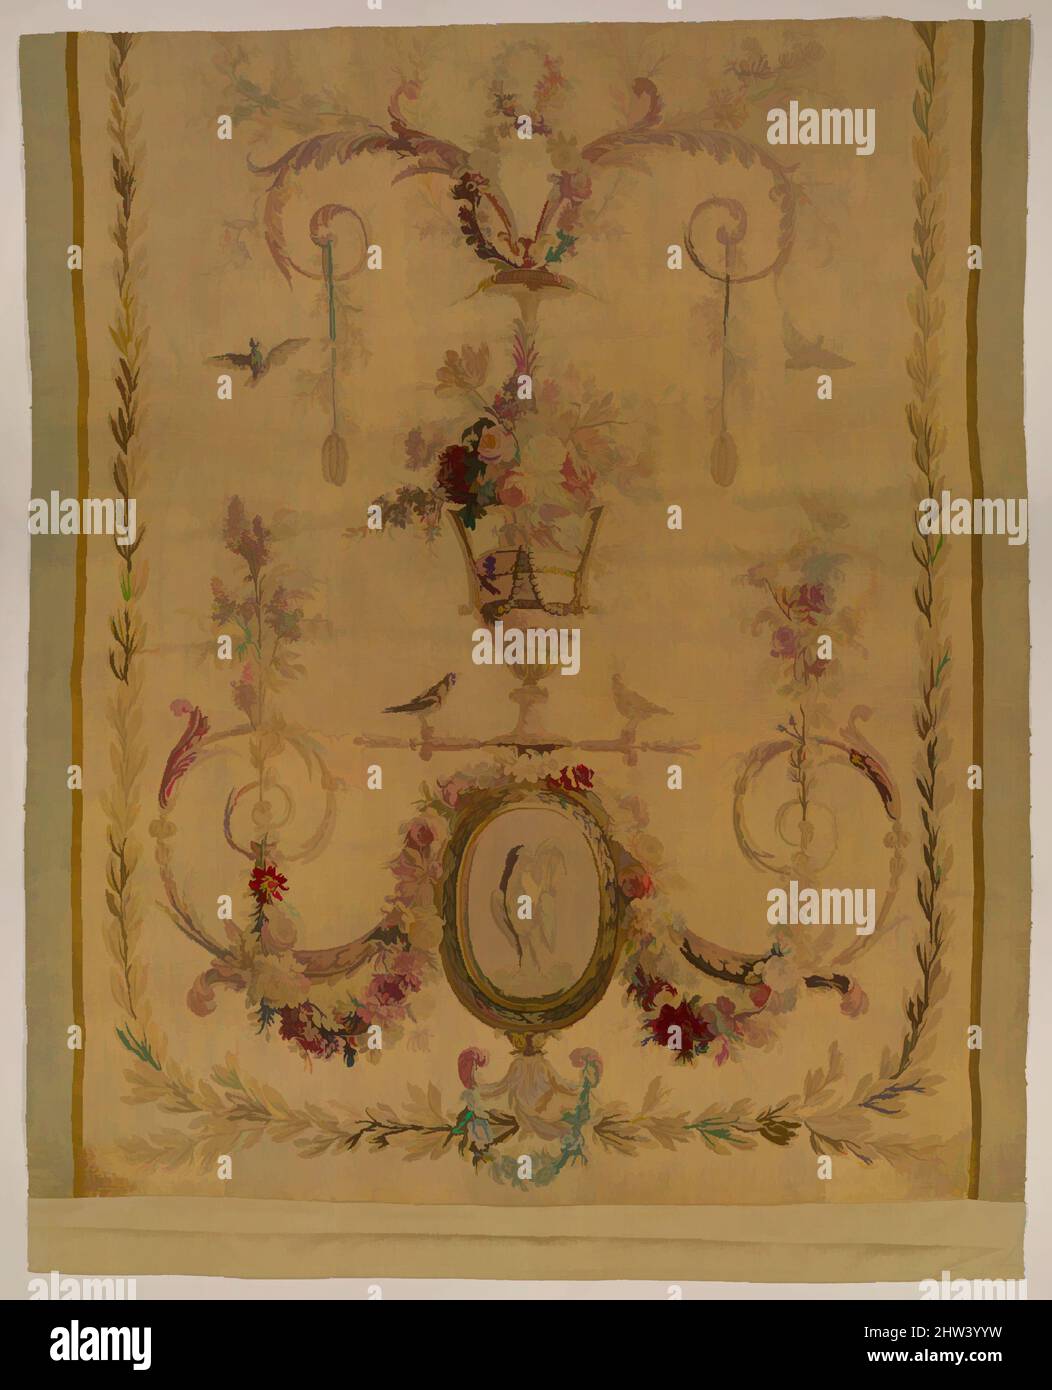 Arte ispirata dal pannello posteriore per un letto (lit à la duchesse en impériale), ca. 1780–90, francese, Beauvais, seta e lana (20-25 orditi per pollice, 8-11 per centimetro), totale: H. 99 1/2 x W. 72 pollici (252,7 x 182,9 cm), Textiles-Araquestries, come il suo baldacchino pieno-size a cupola è sospeso dal, opere classiche modernizzate da Artotop con un tuffo di modernità. Forme, colore e valore, impatto visivo accattivante sulle emozioni artistiche attraverso la libertà delle opere d'arte in modo contemporaneo. Un messaggio senza tempo che persegue una nuova direzione selvaggiamente creativa. Artisti che si rivolgono al supporto digitale e creano l'NFT Artotop Foto Stock